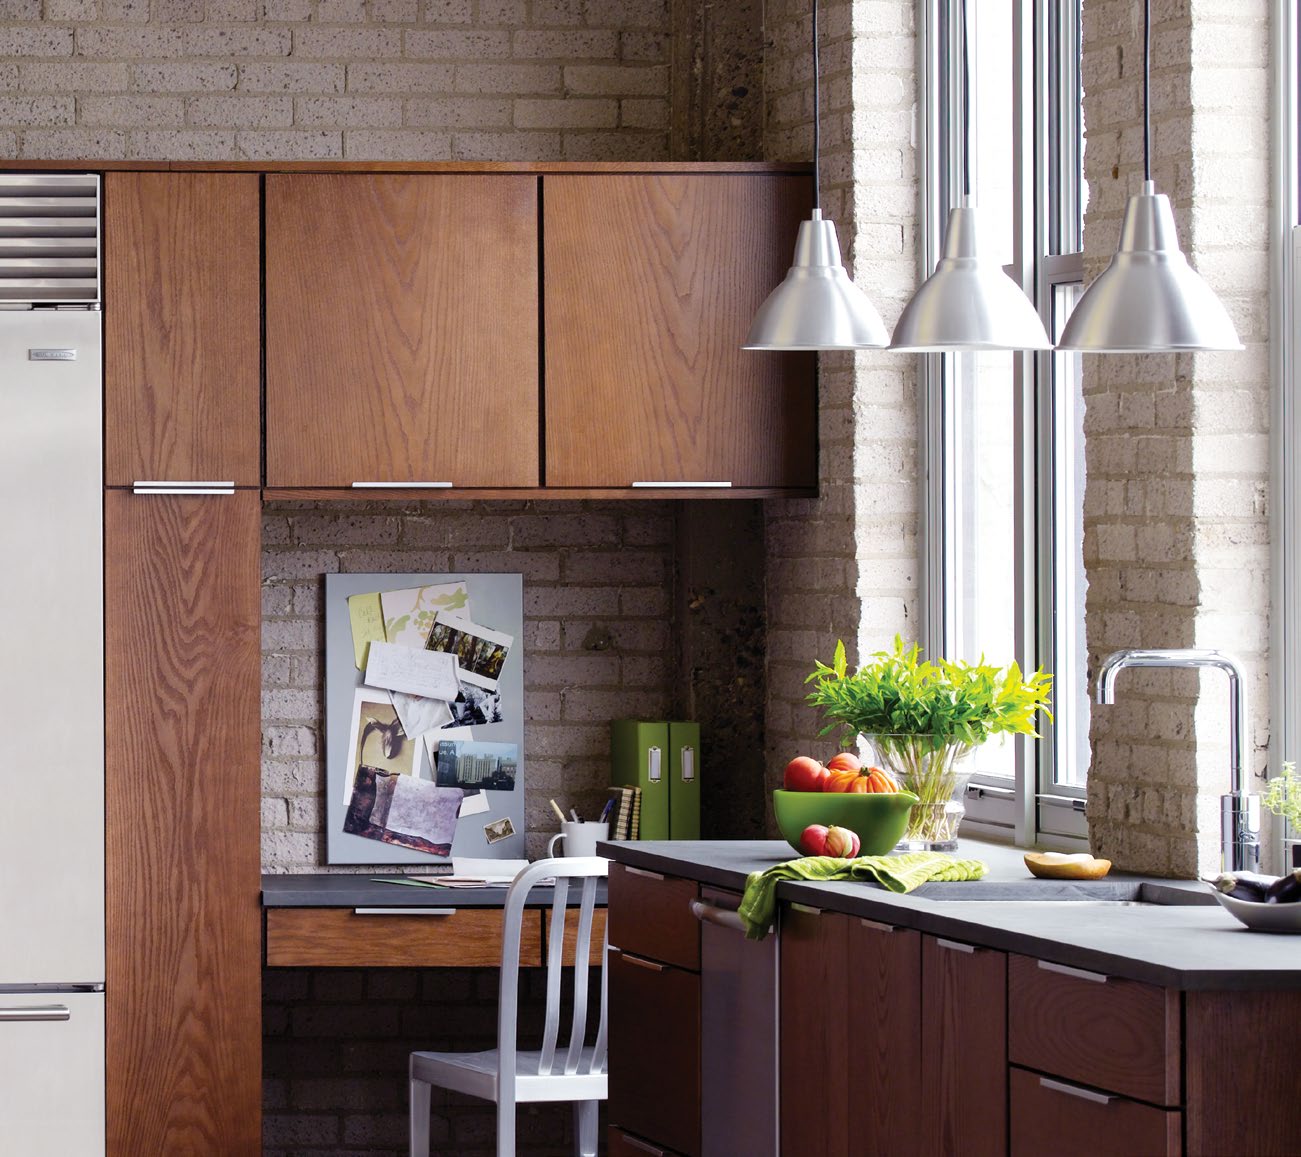 Norcraft Kitchen minimalist kitchen design